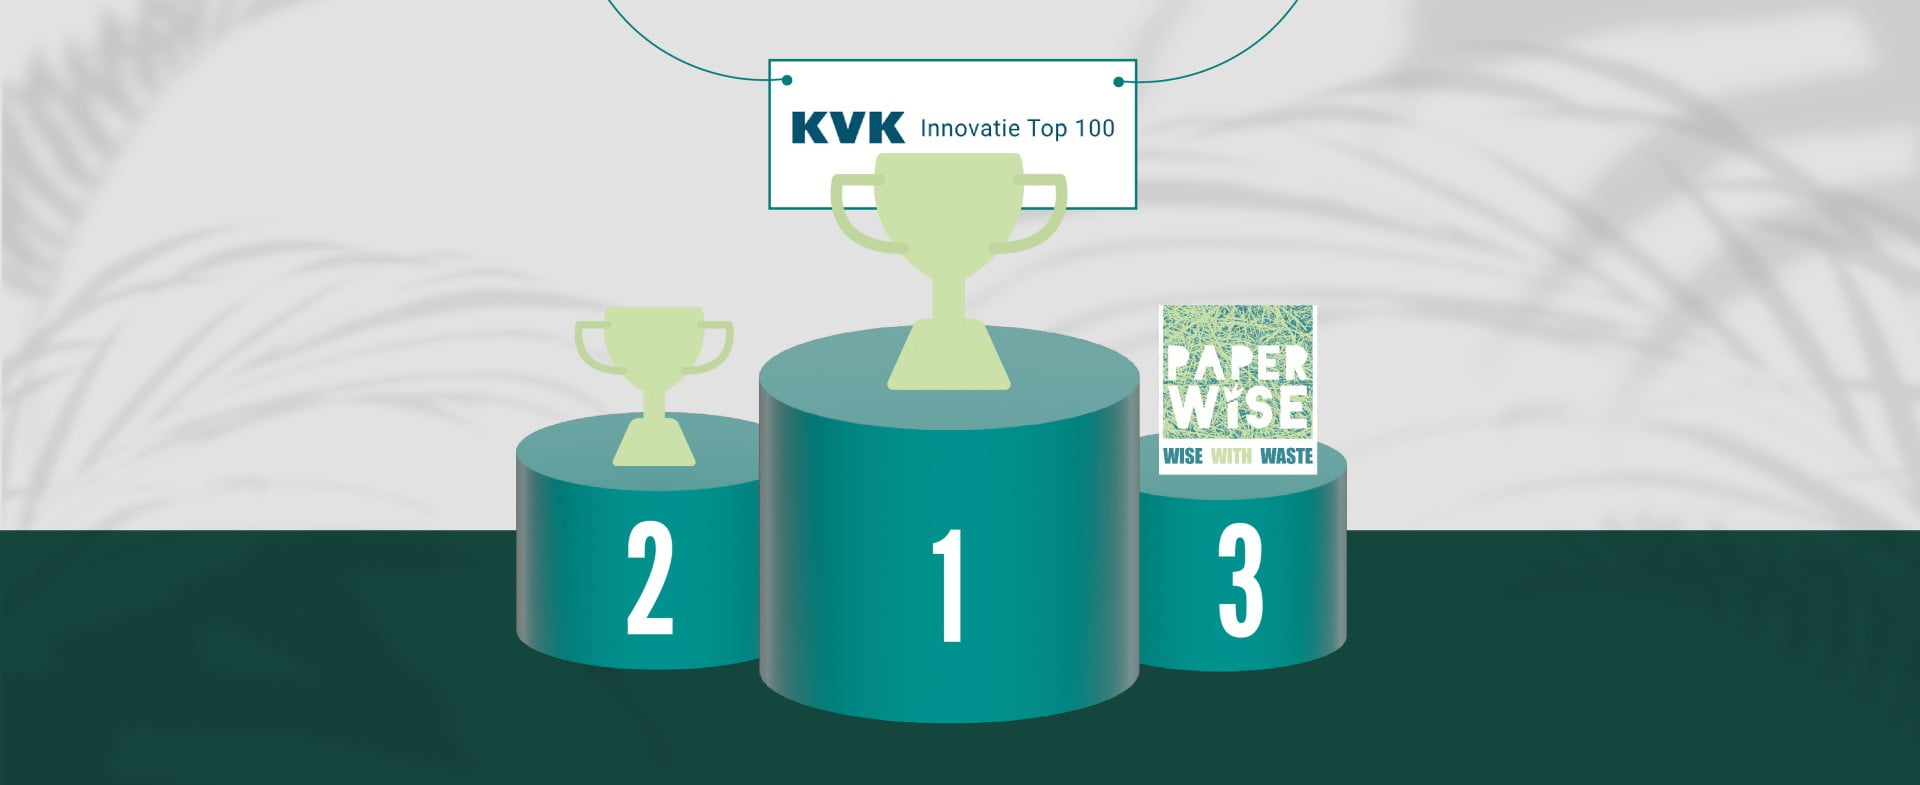 PaperWise tar tredjeplassen i Chamber of Commerce Innovation Top 100